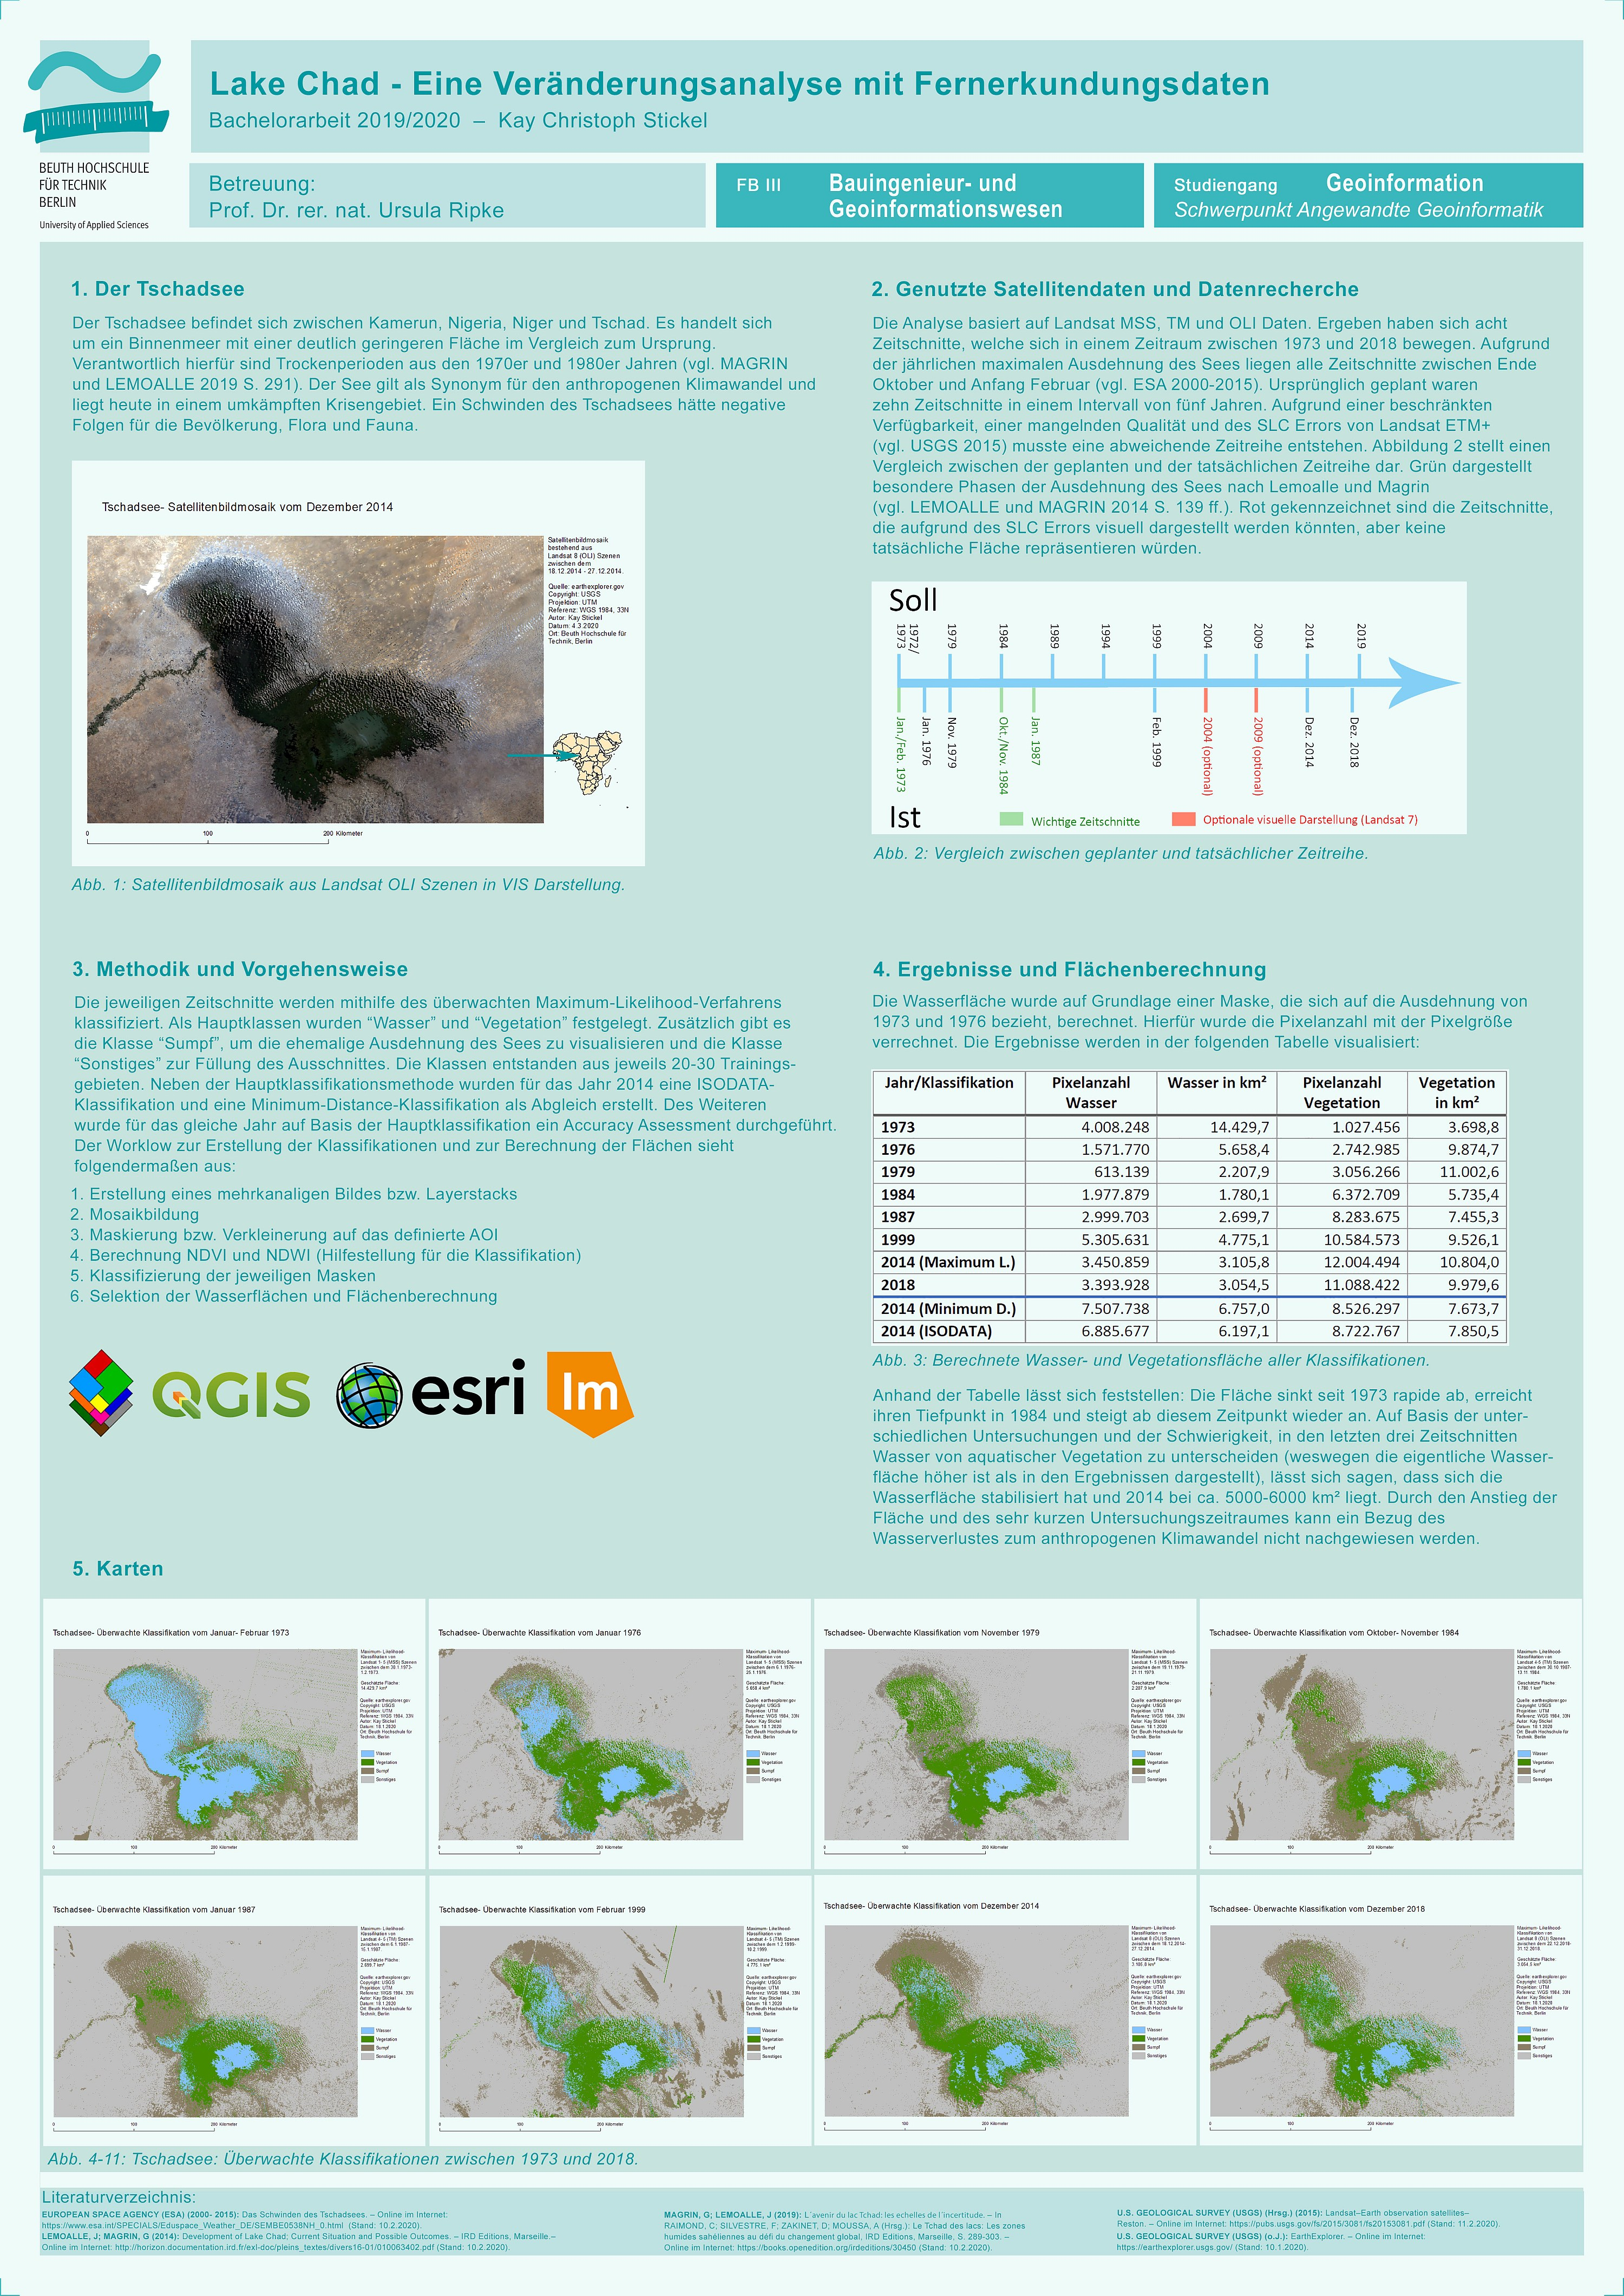 Poster: Lake Chad – Eine Veränderungsanalyse mit Fernerkundungsdaten